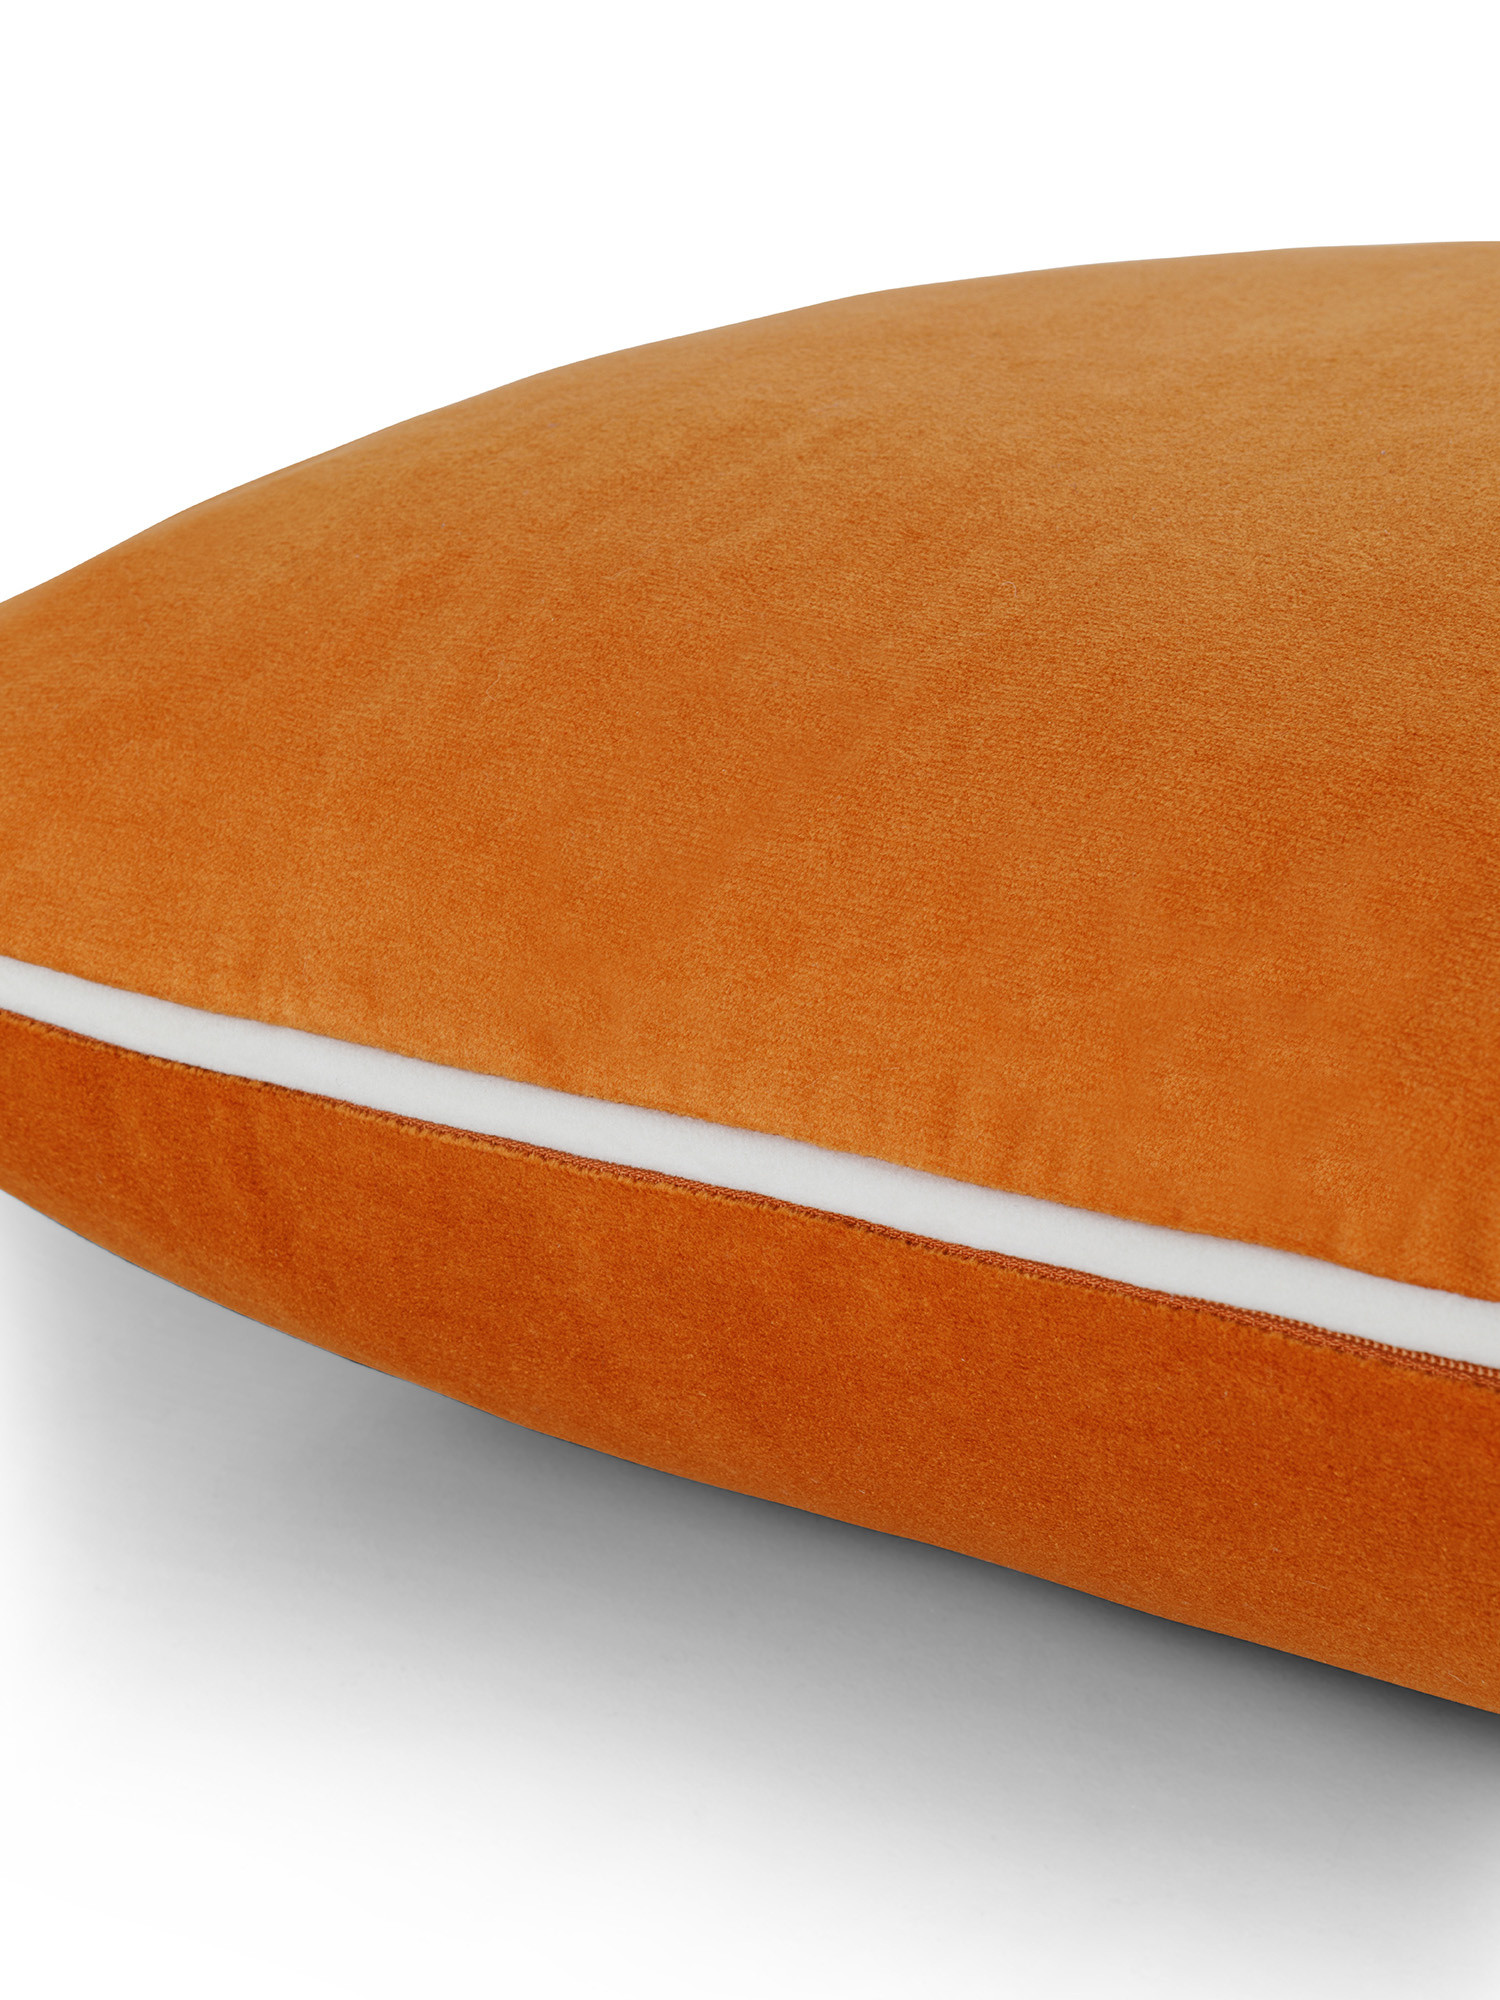 Cuscino in velluto con piping applicato sul bordo 45x45 cm, Arancione, large image number 2